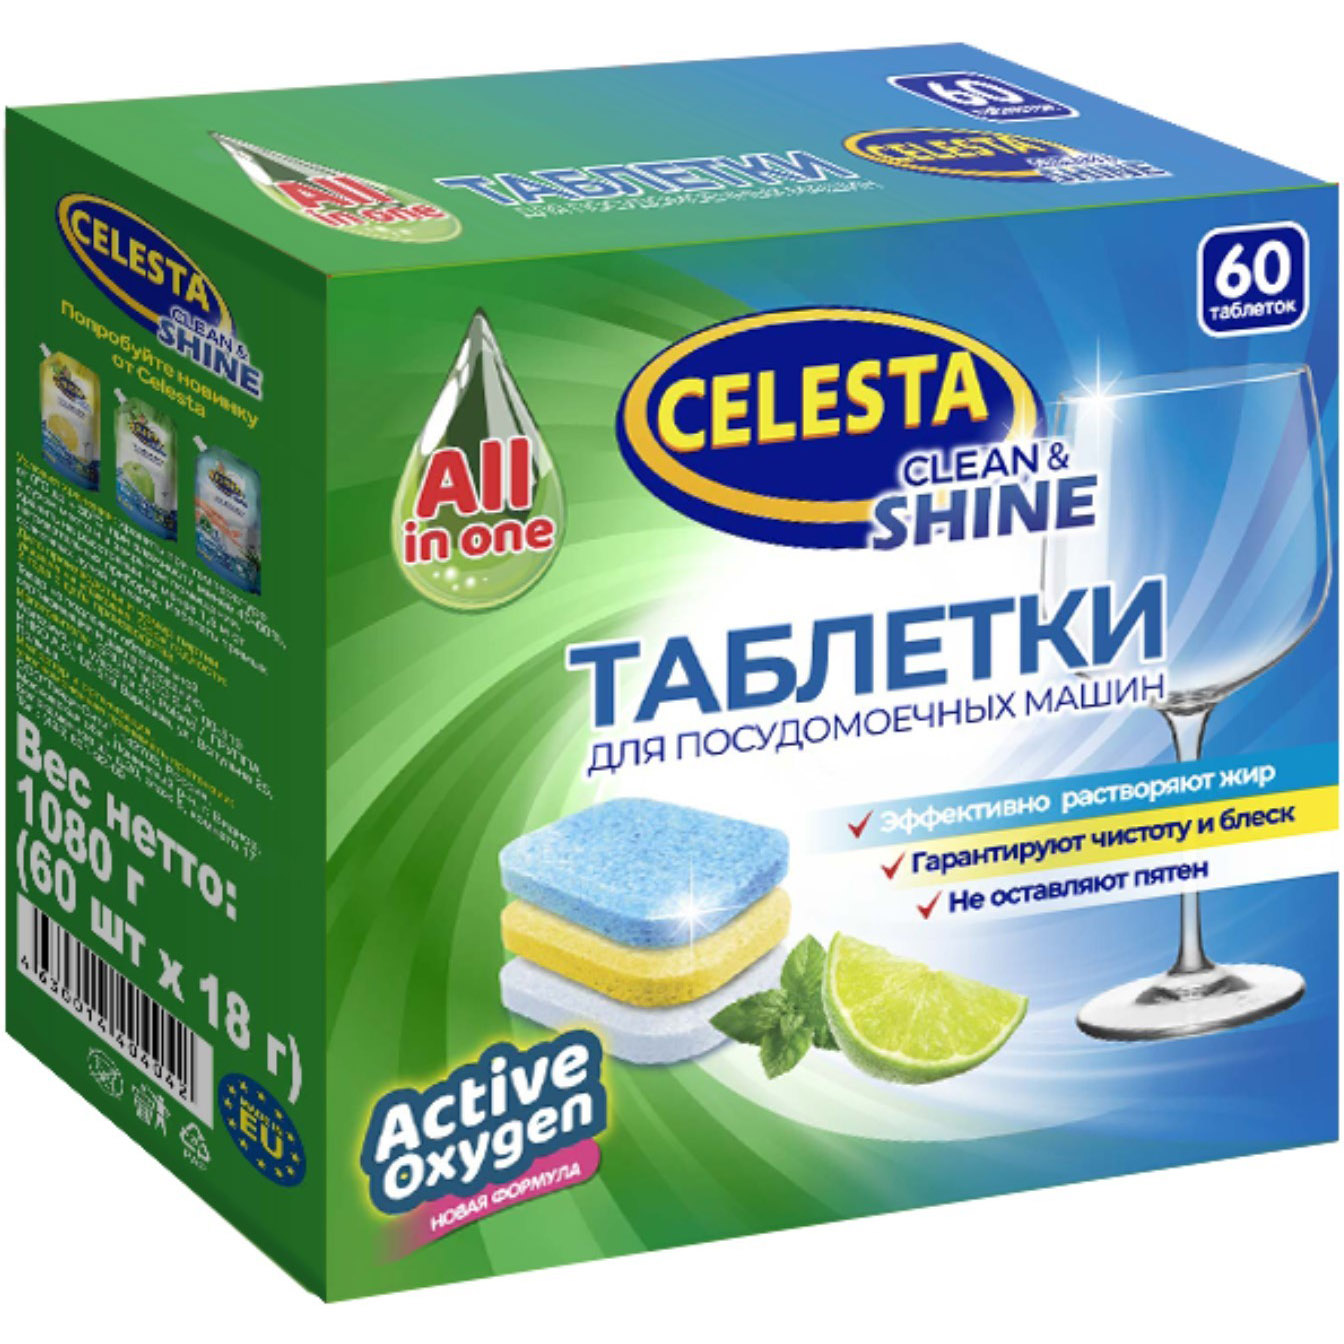 Таблетки для посудомоечных машин Celesta Clean & shine Трехслойные 60 шт яrok таблетки для посудомоечных машин эко бесфосфатные 105